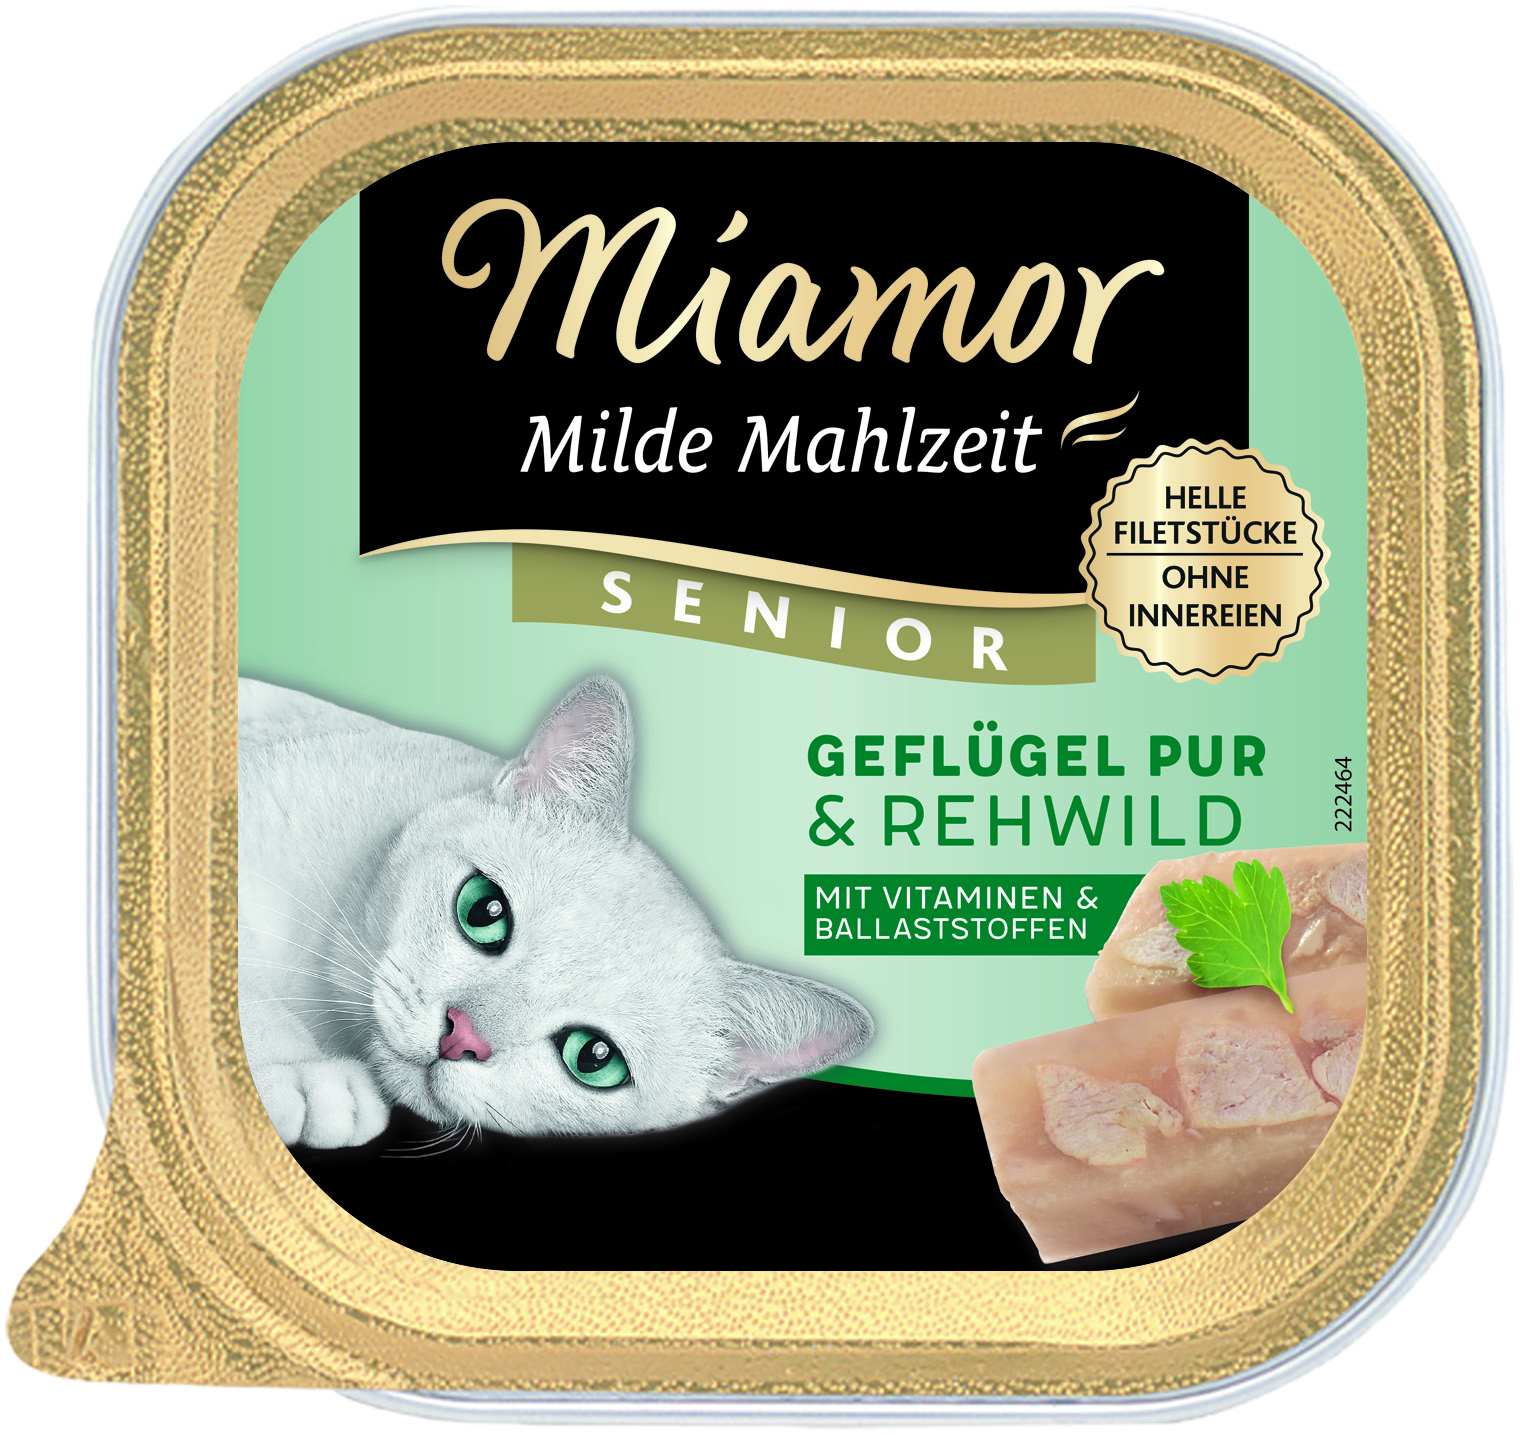 Miamor Milde Mahlzeit Senior Geflügel Pur & Rehwild 100g